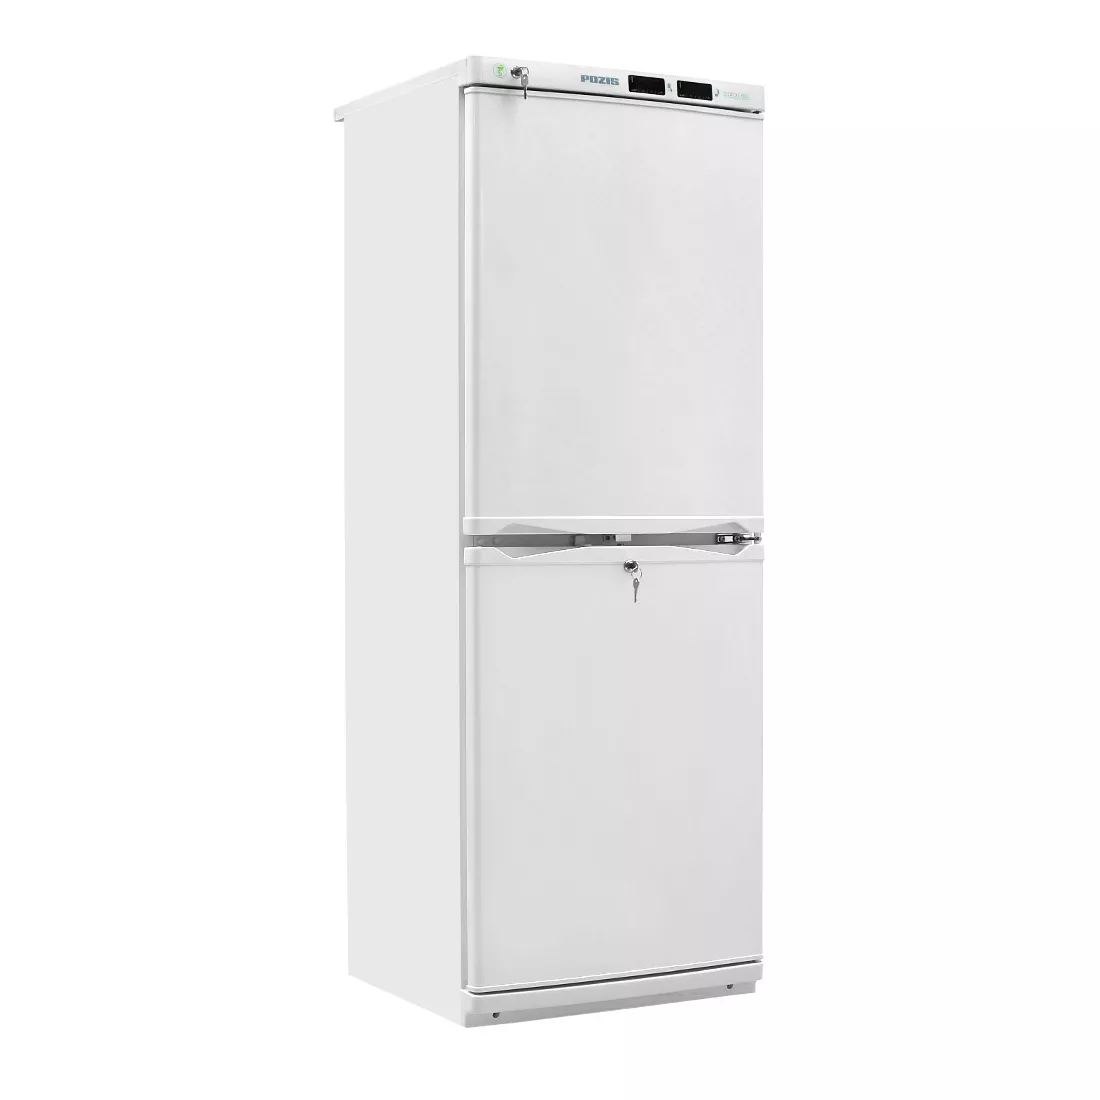 POZIS ХФД-280 - холодильник фармацевтический двухкамерный, металлическая дверь, объем 280 л